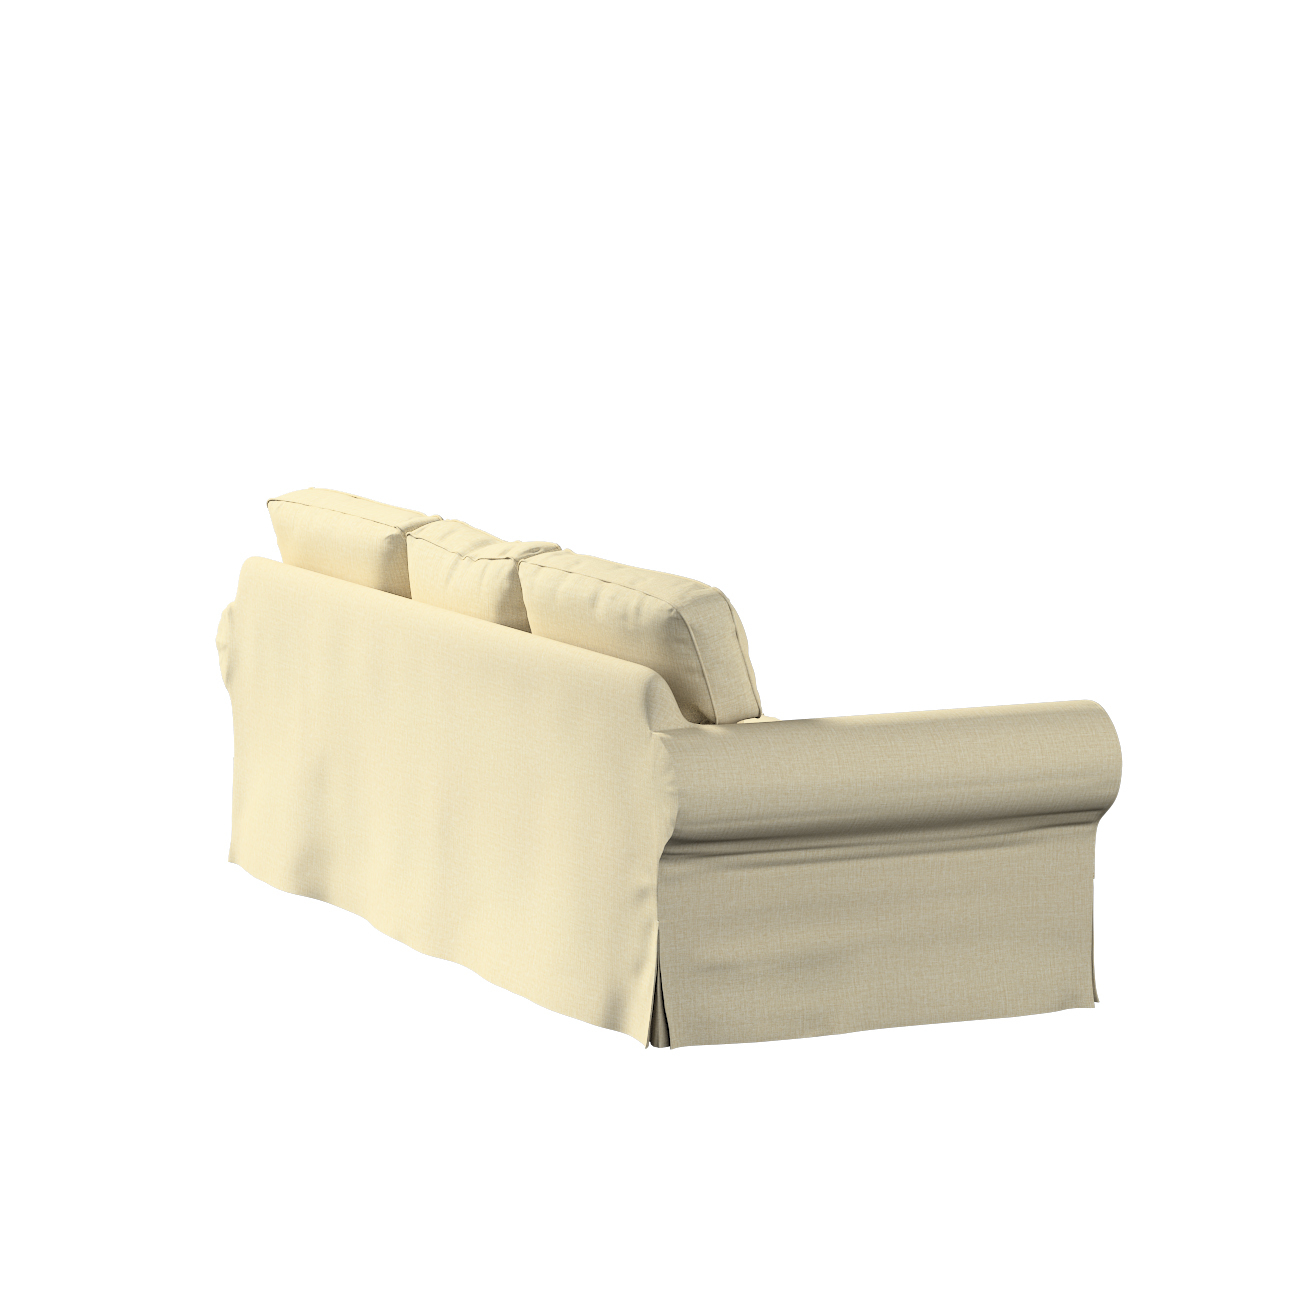 Bezug für Ektorp 3-Sitzer Schlafsofa, neues Modell (2013), olivgrün-creme, günstig online kaufen